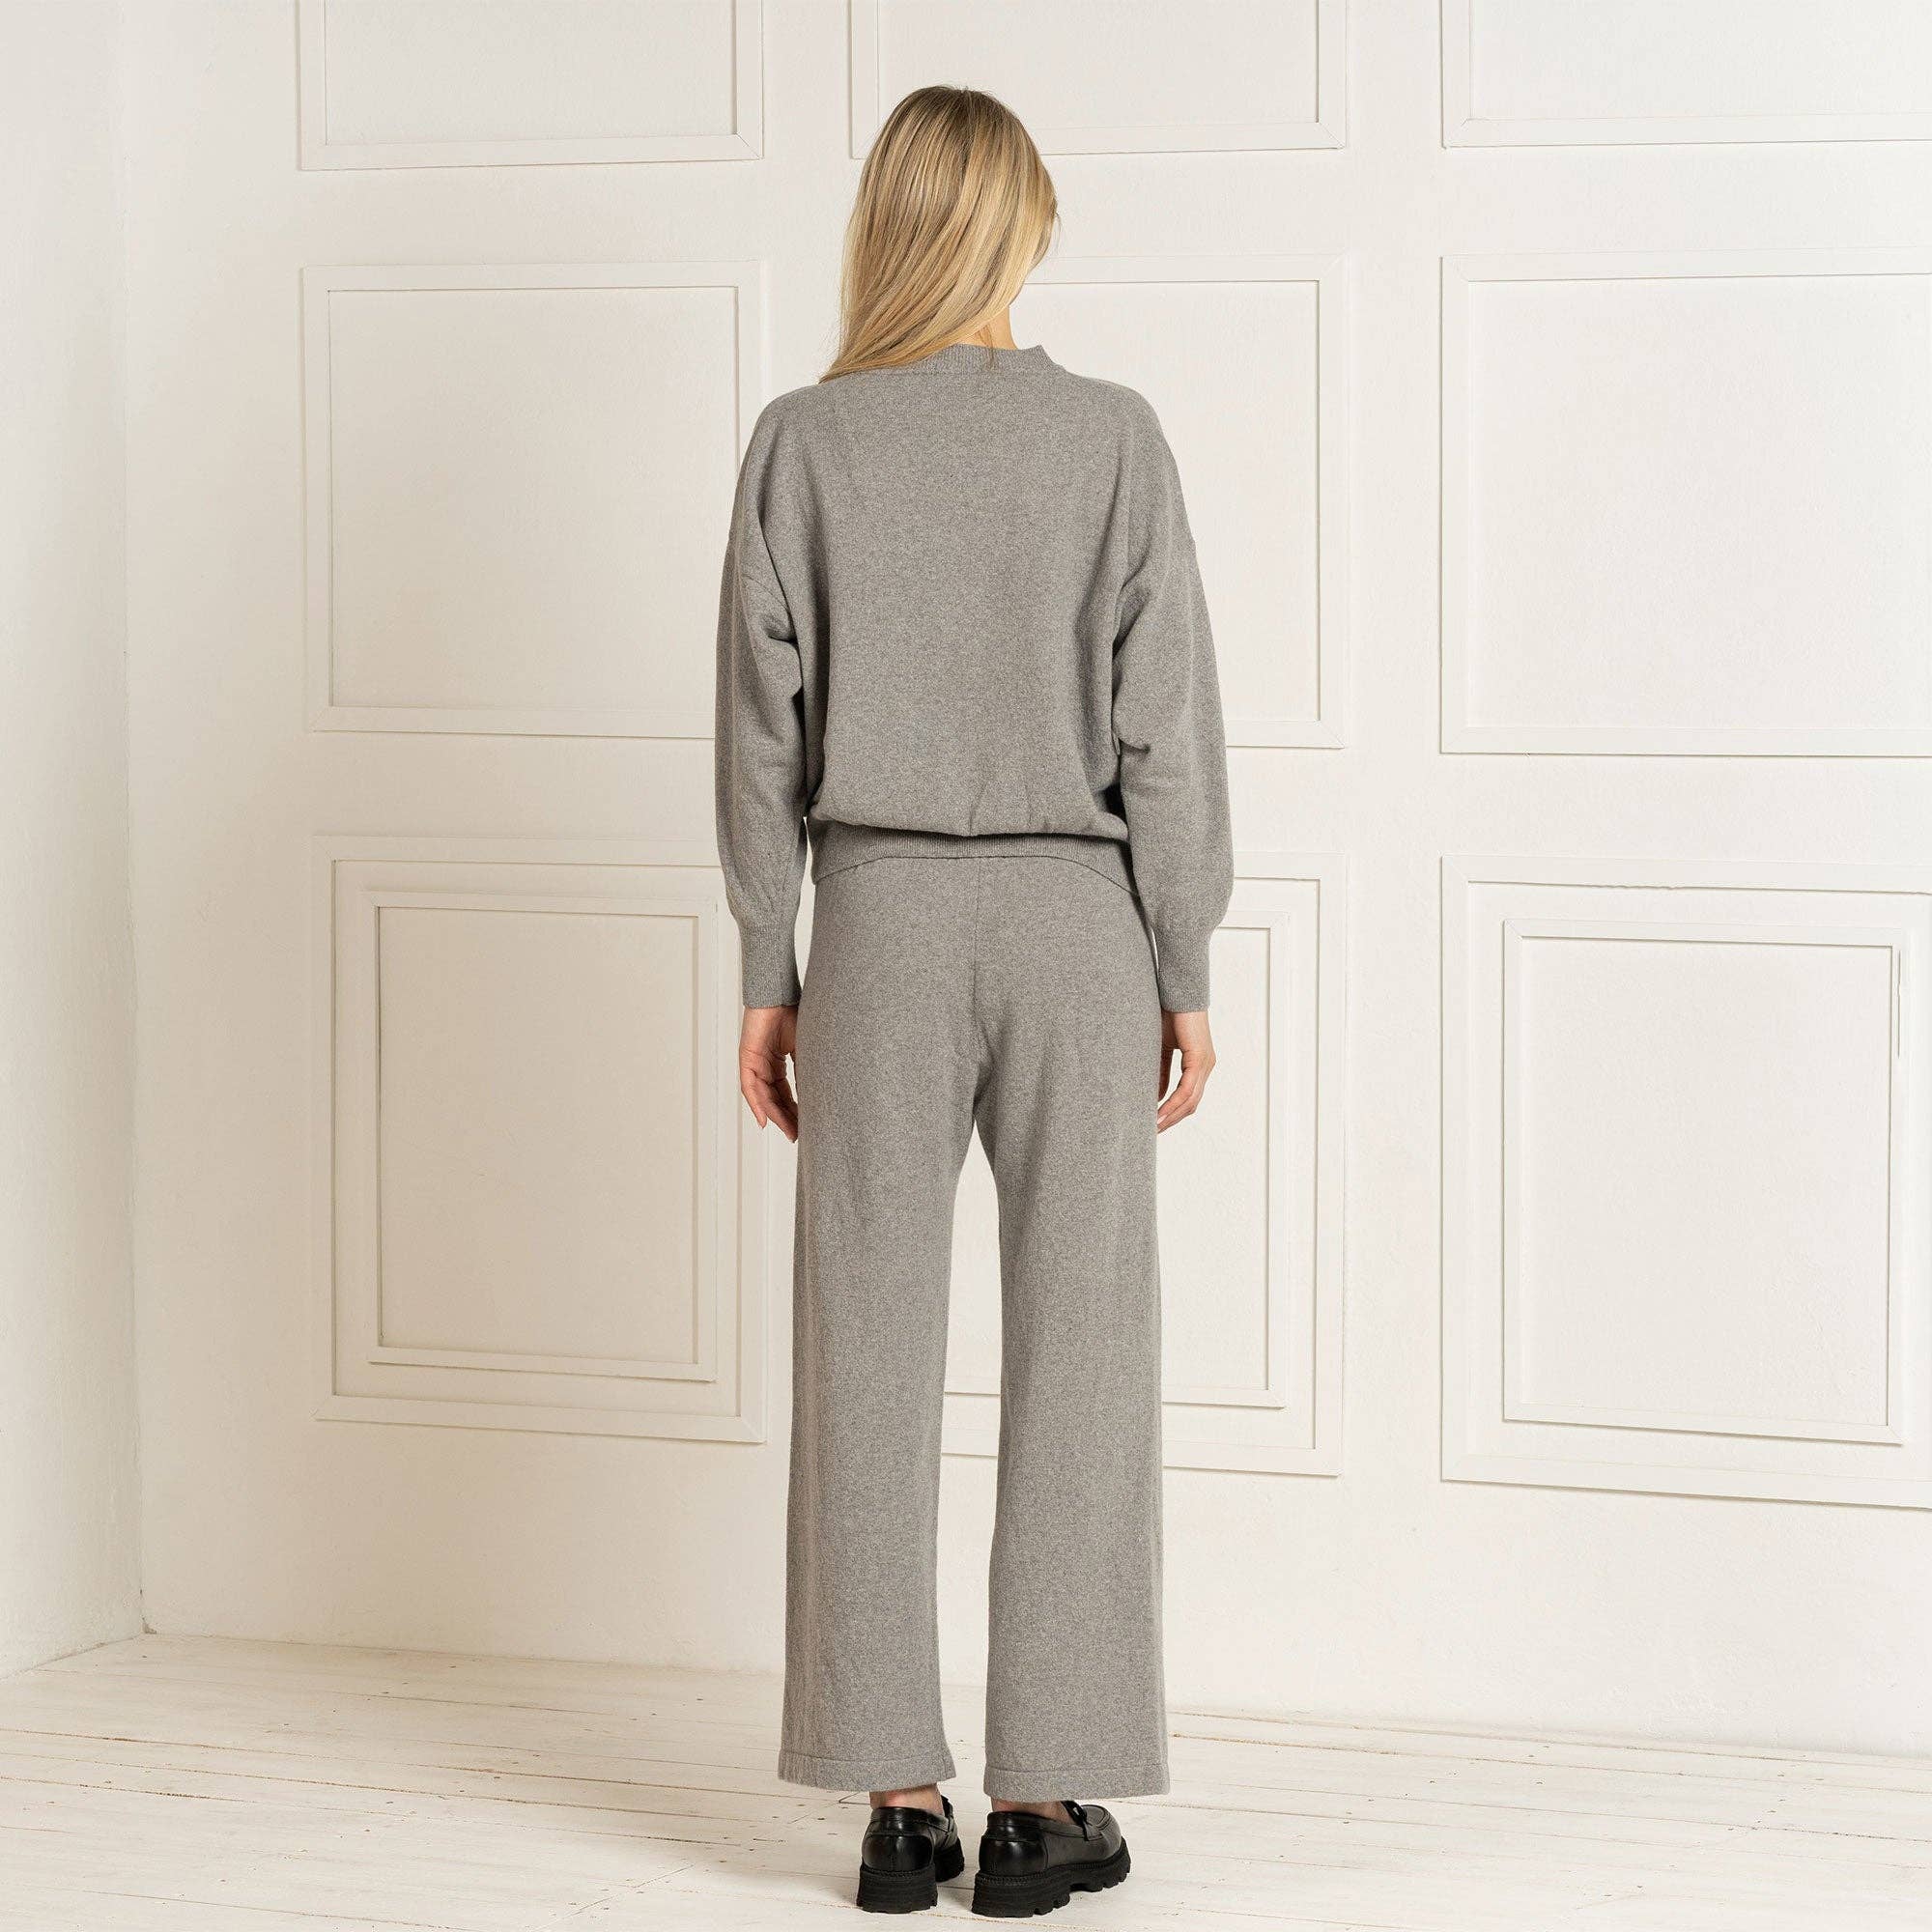 menique - Women's 100% Merino Wide Leg Pants Helsinki Light Gray: S / Light Gray